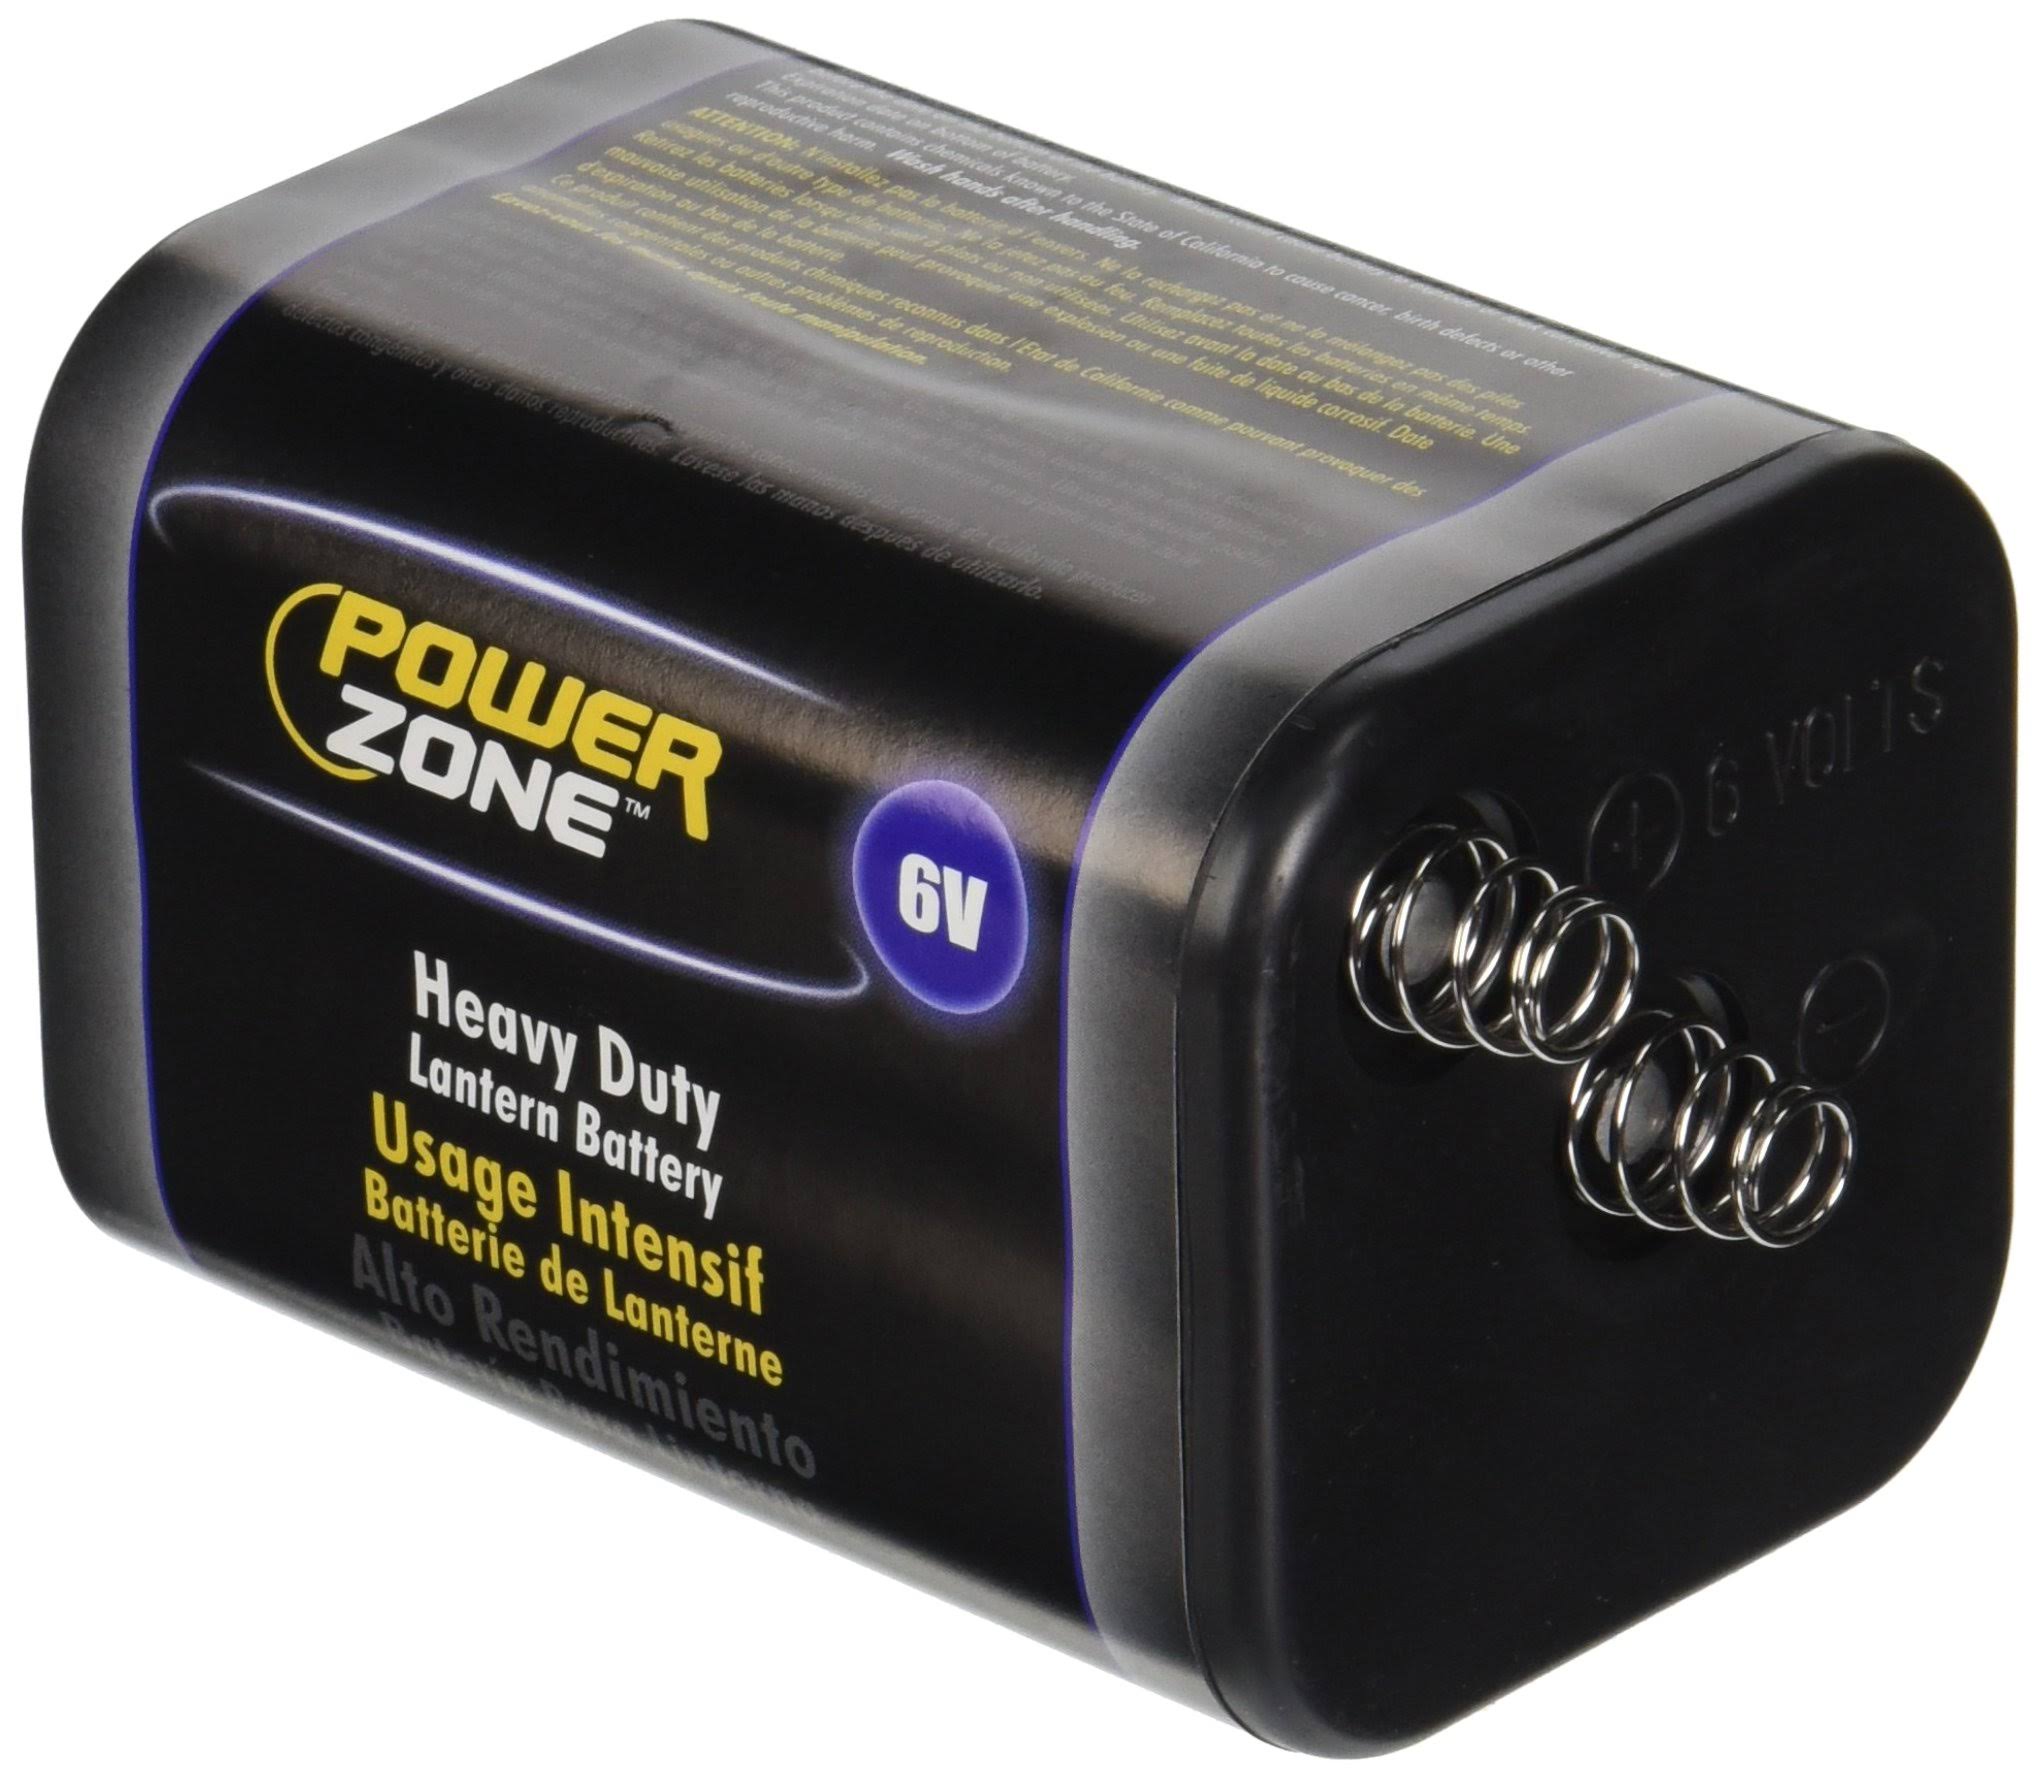 Power Zone 4R25 Heavy Duty Lantern Battery - 6v